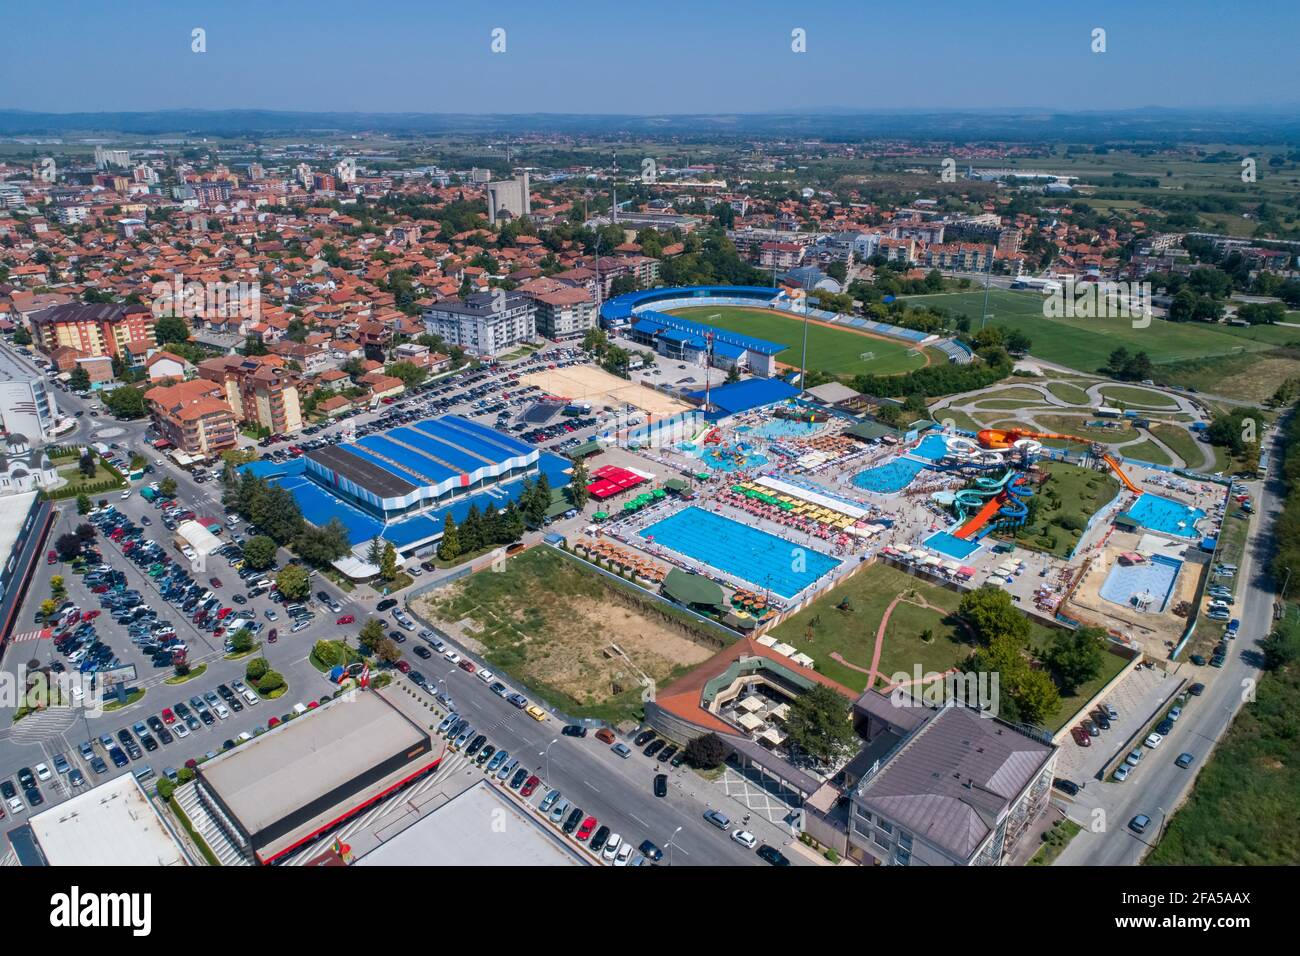 Jagodina vue drone, Serbie photo aérienne. Jour d'été Banque D'Images